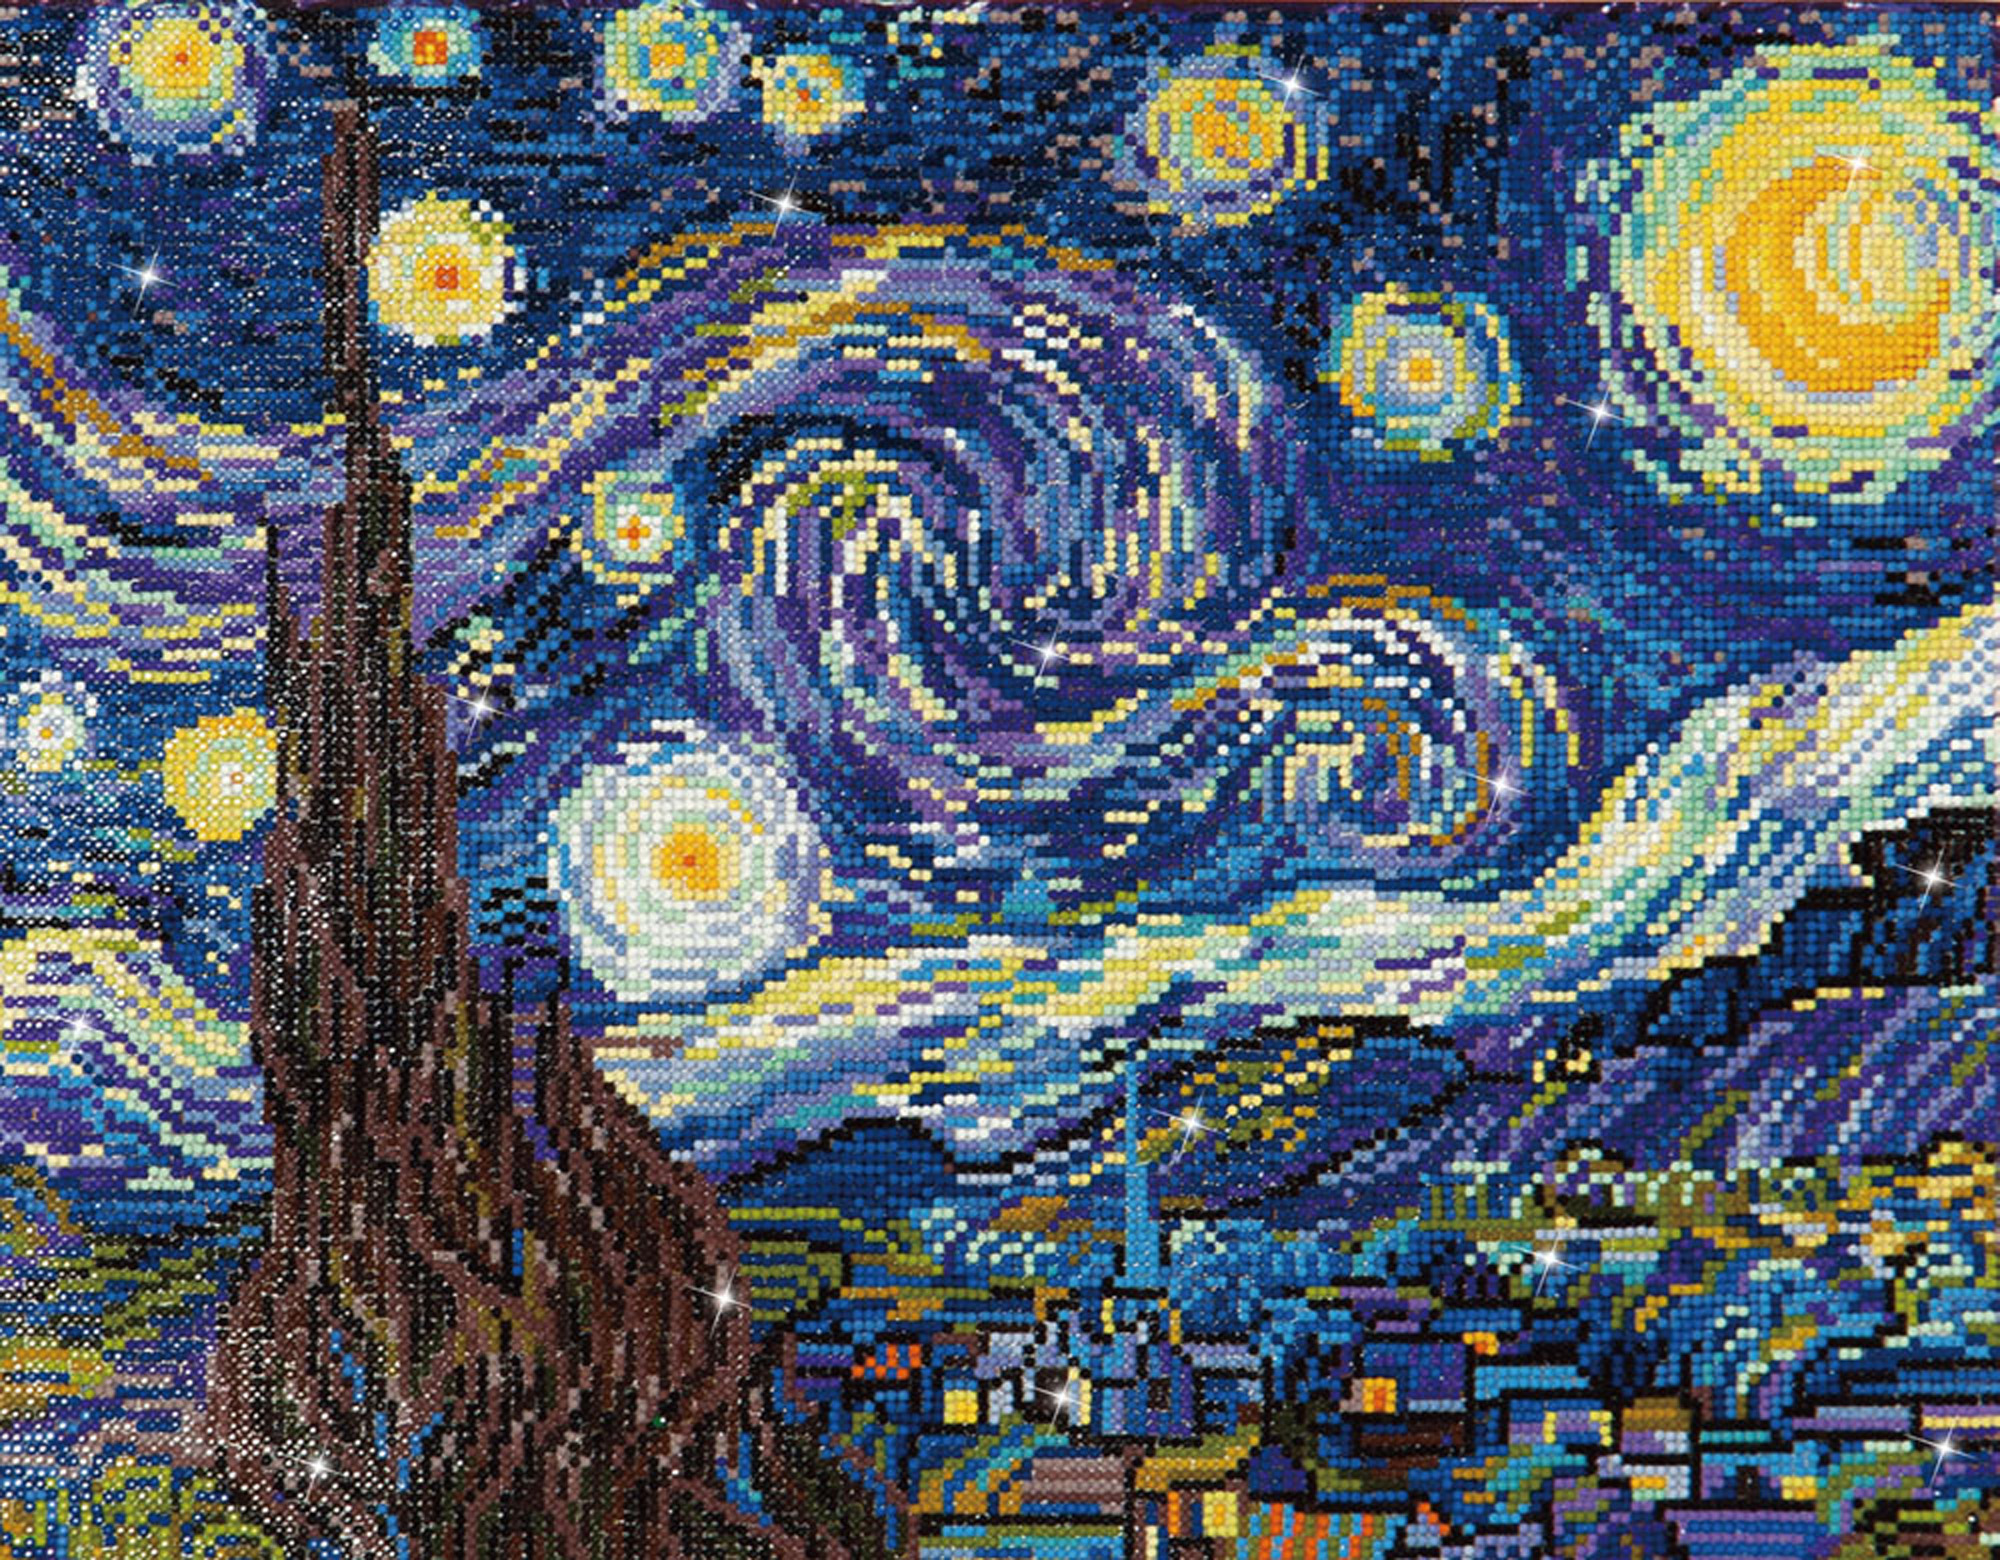 Tablou cu diamante – Noapte înstelată (Van Gogh), 41 x 51 cm edituradiana.ro imagine 2022